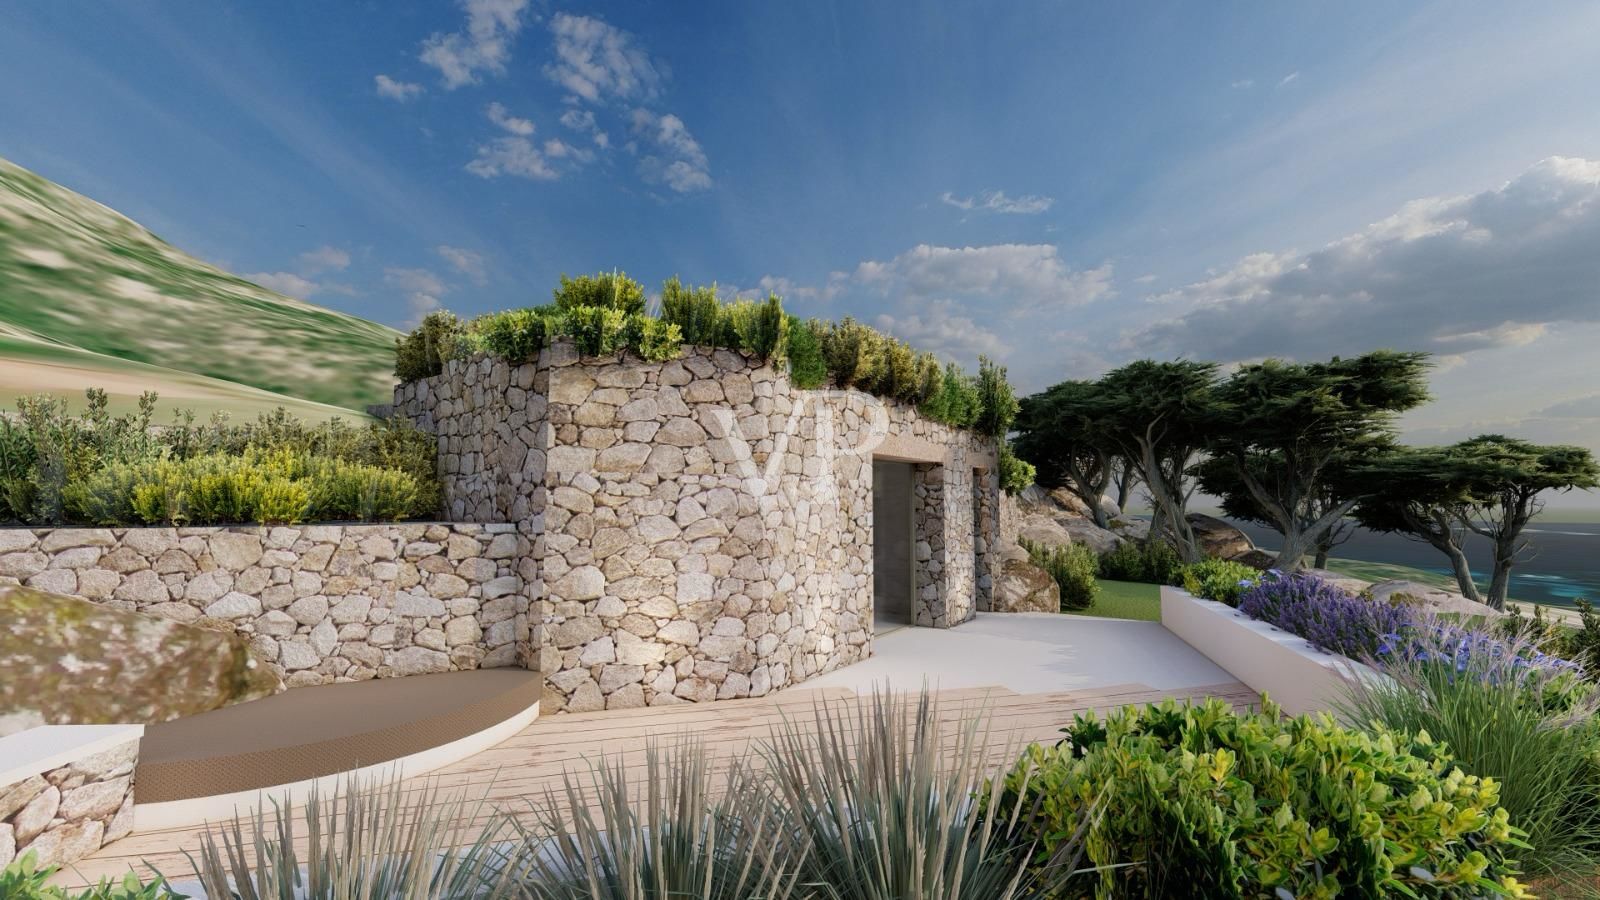 Pantogia, Sardinia: Prestigious villa with breathtaking sea views